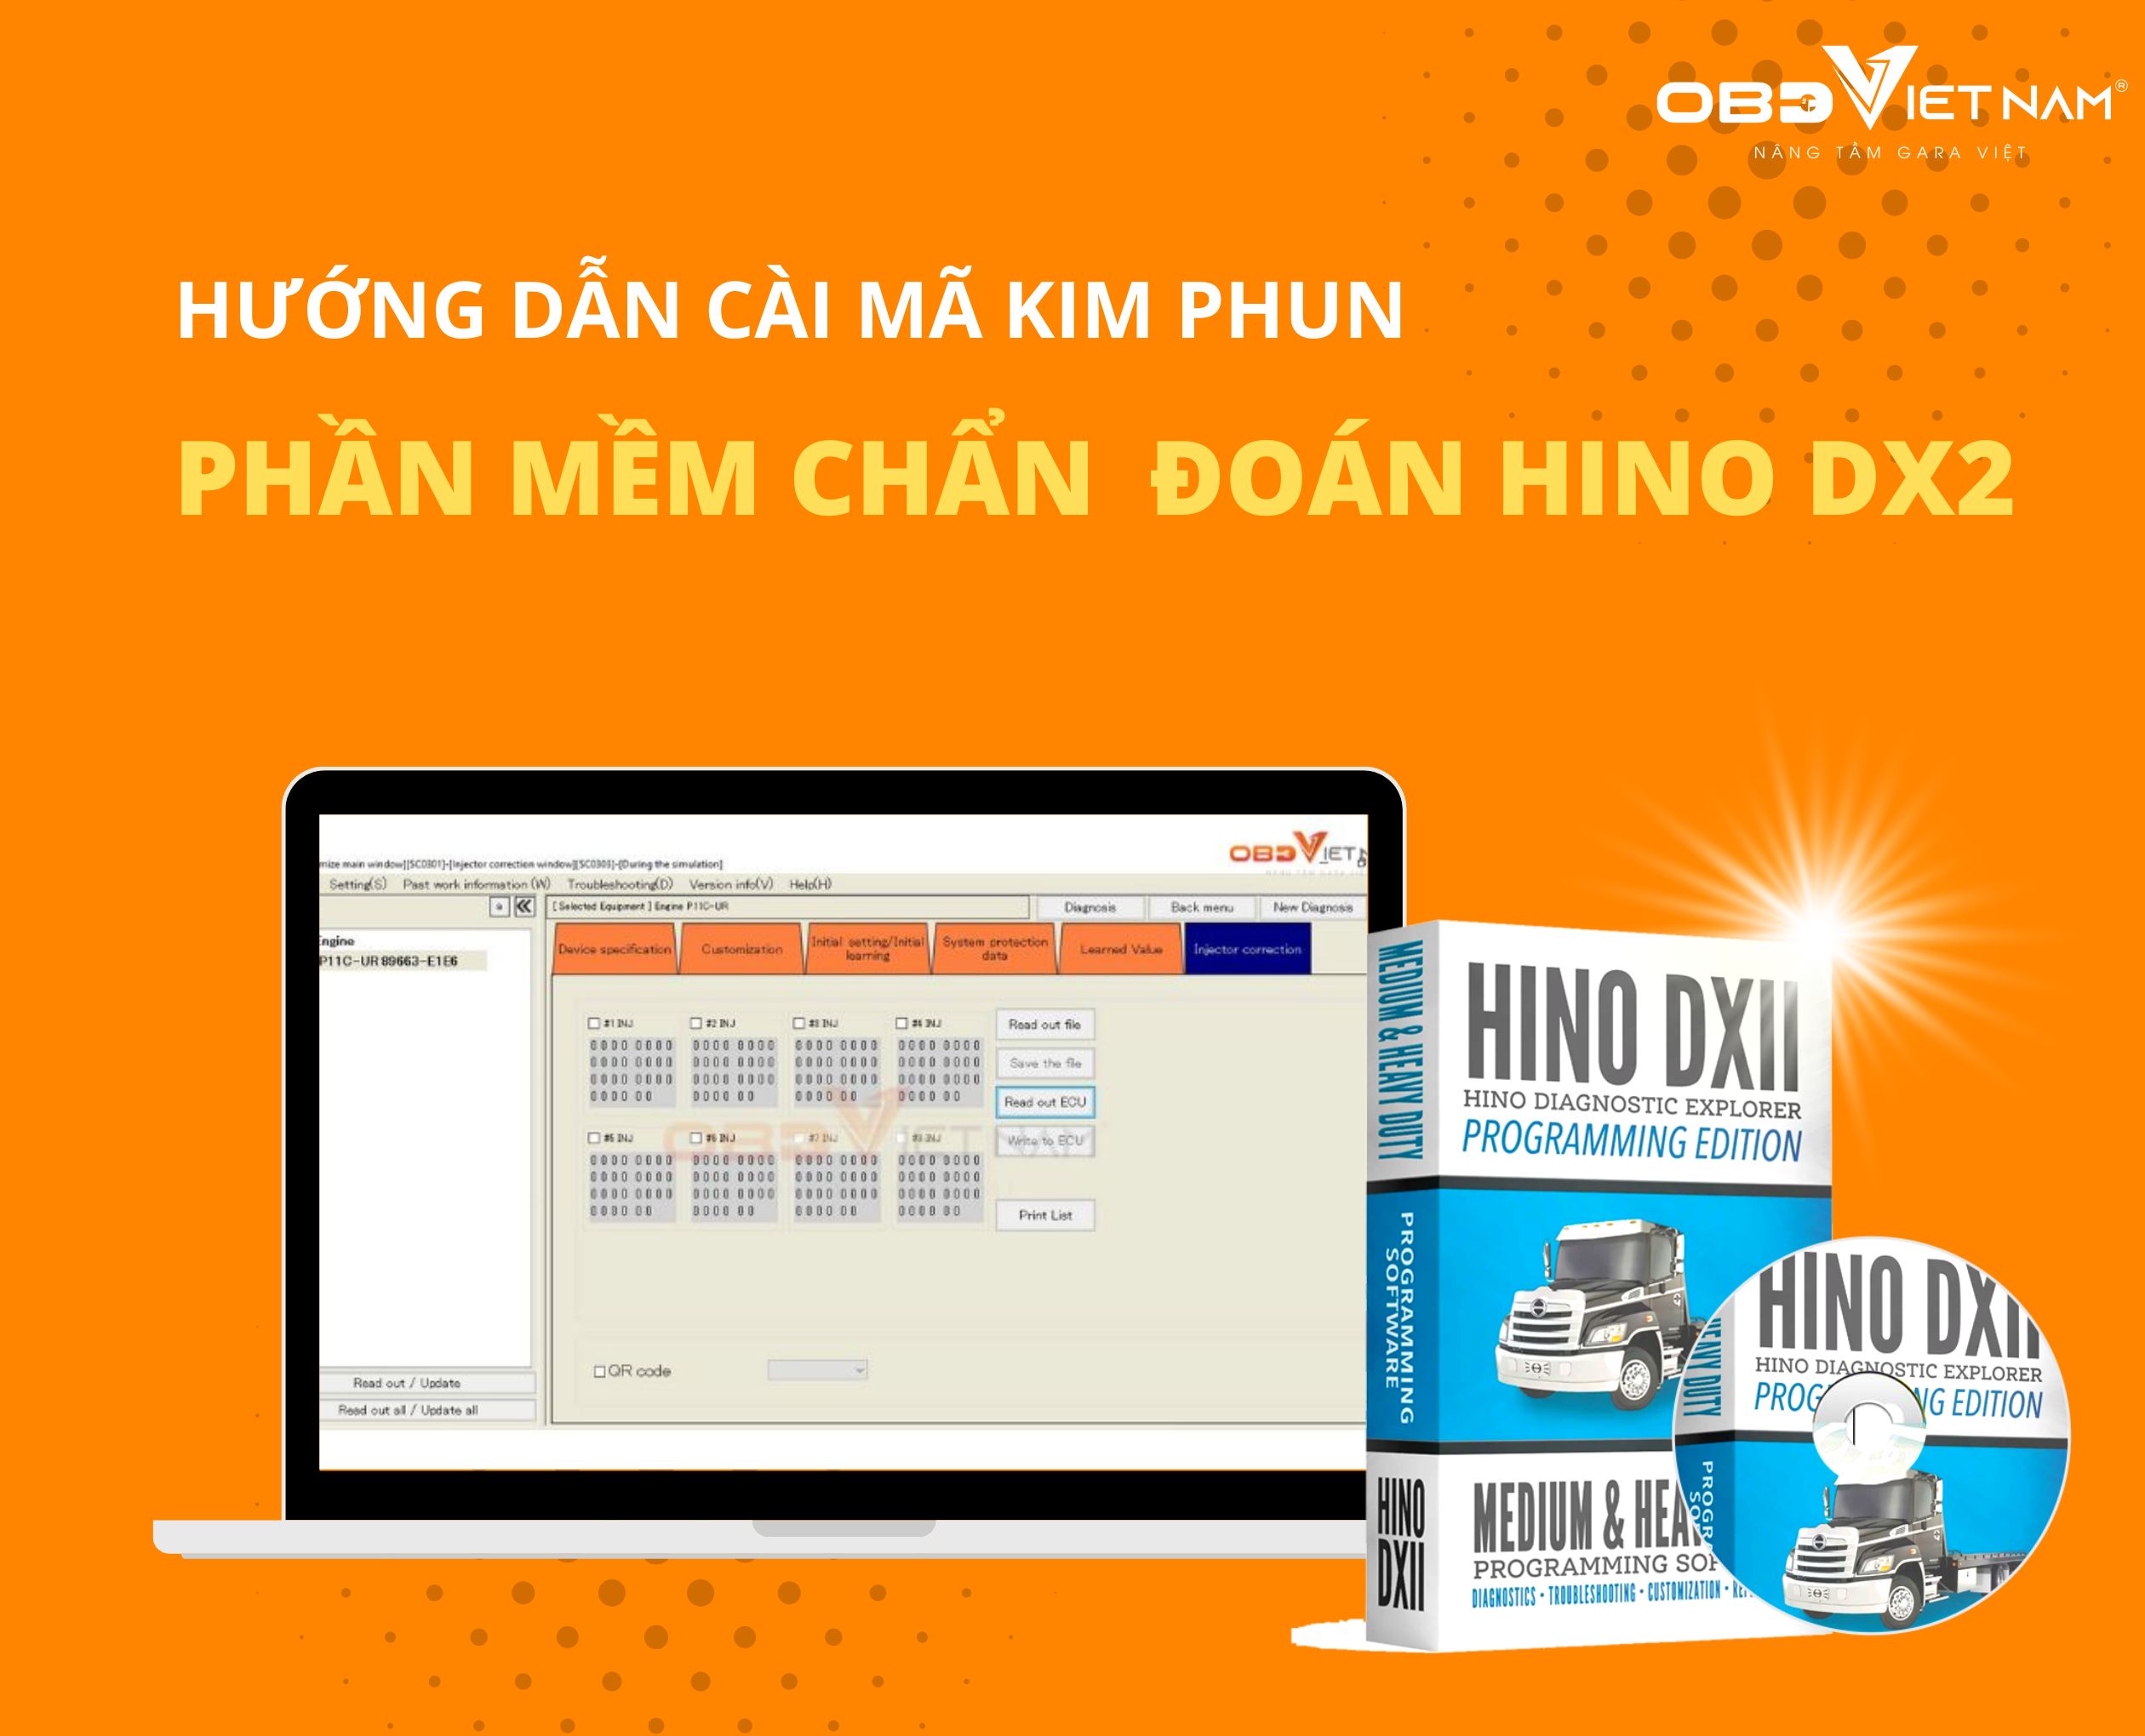 huong-dan-cai-ma-kim-phun-bang-phan-mem-hino-dx2-obdvietnam (1)